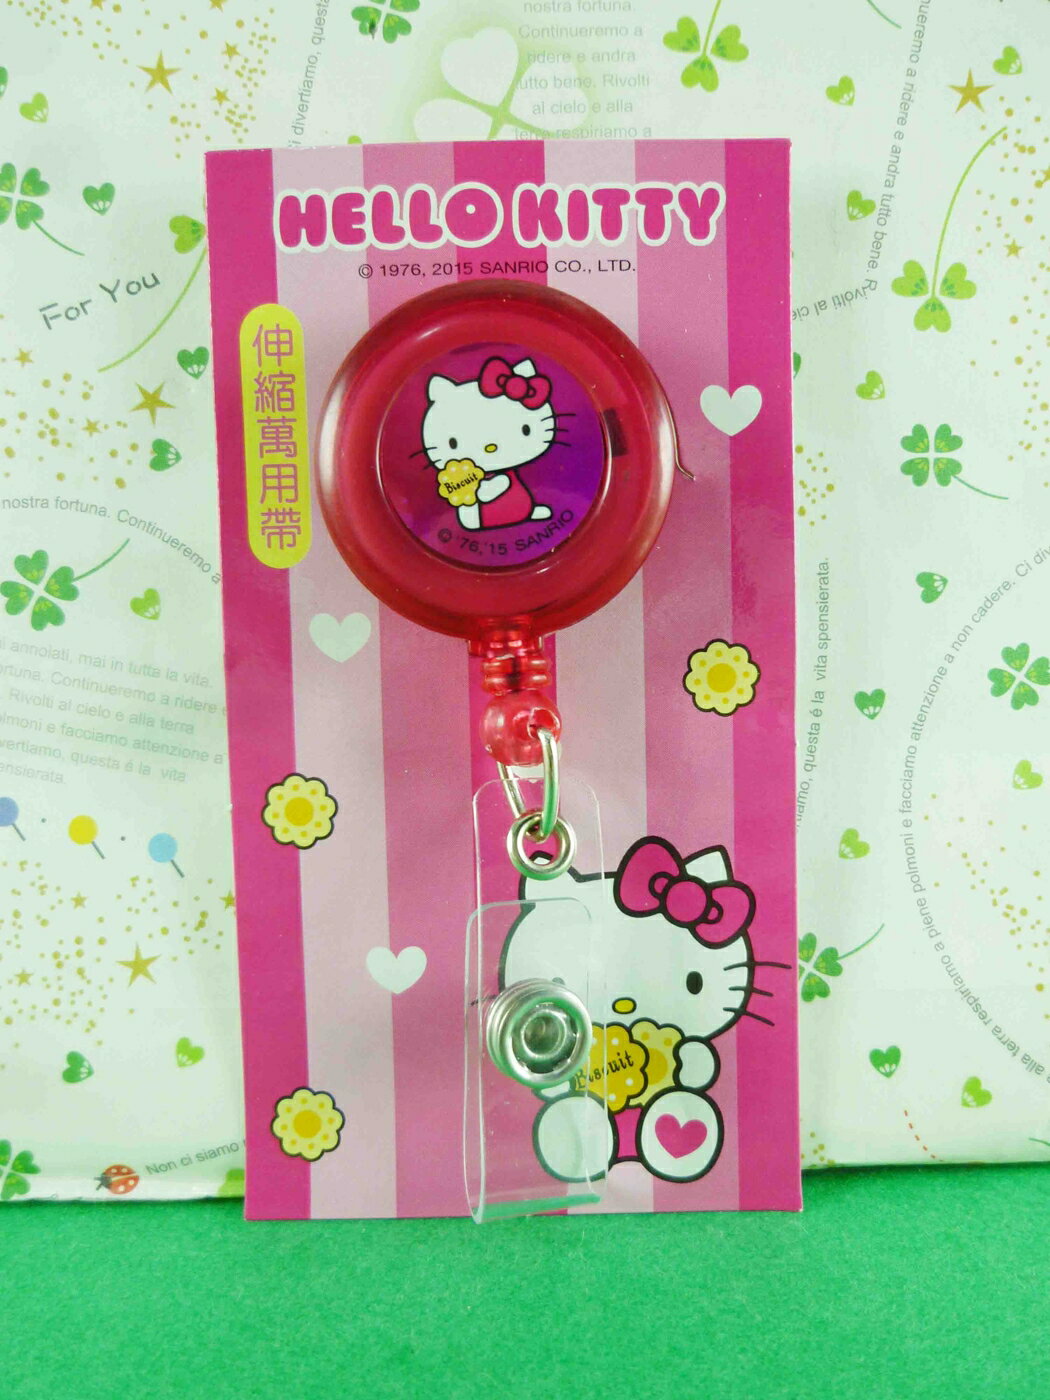 【震撼精品百貨】Hello Kitty 凱蒂貓 伸縮萬用扣-圓紅餅乾 震撼日式精品百貨